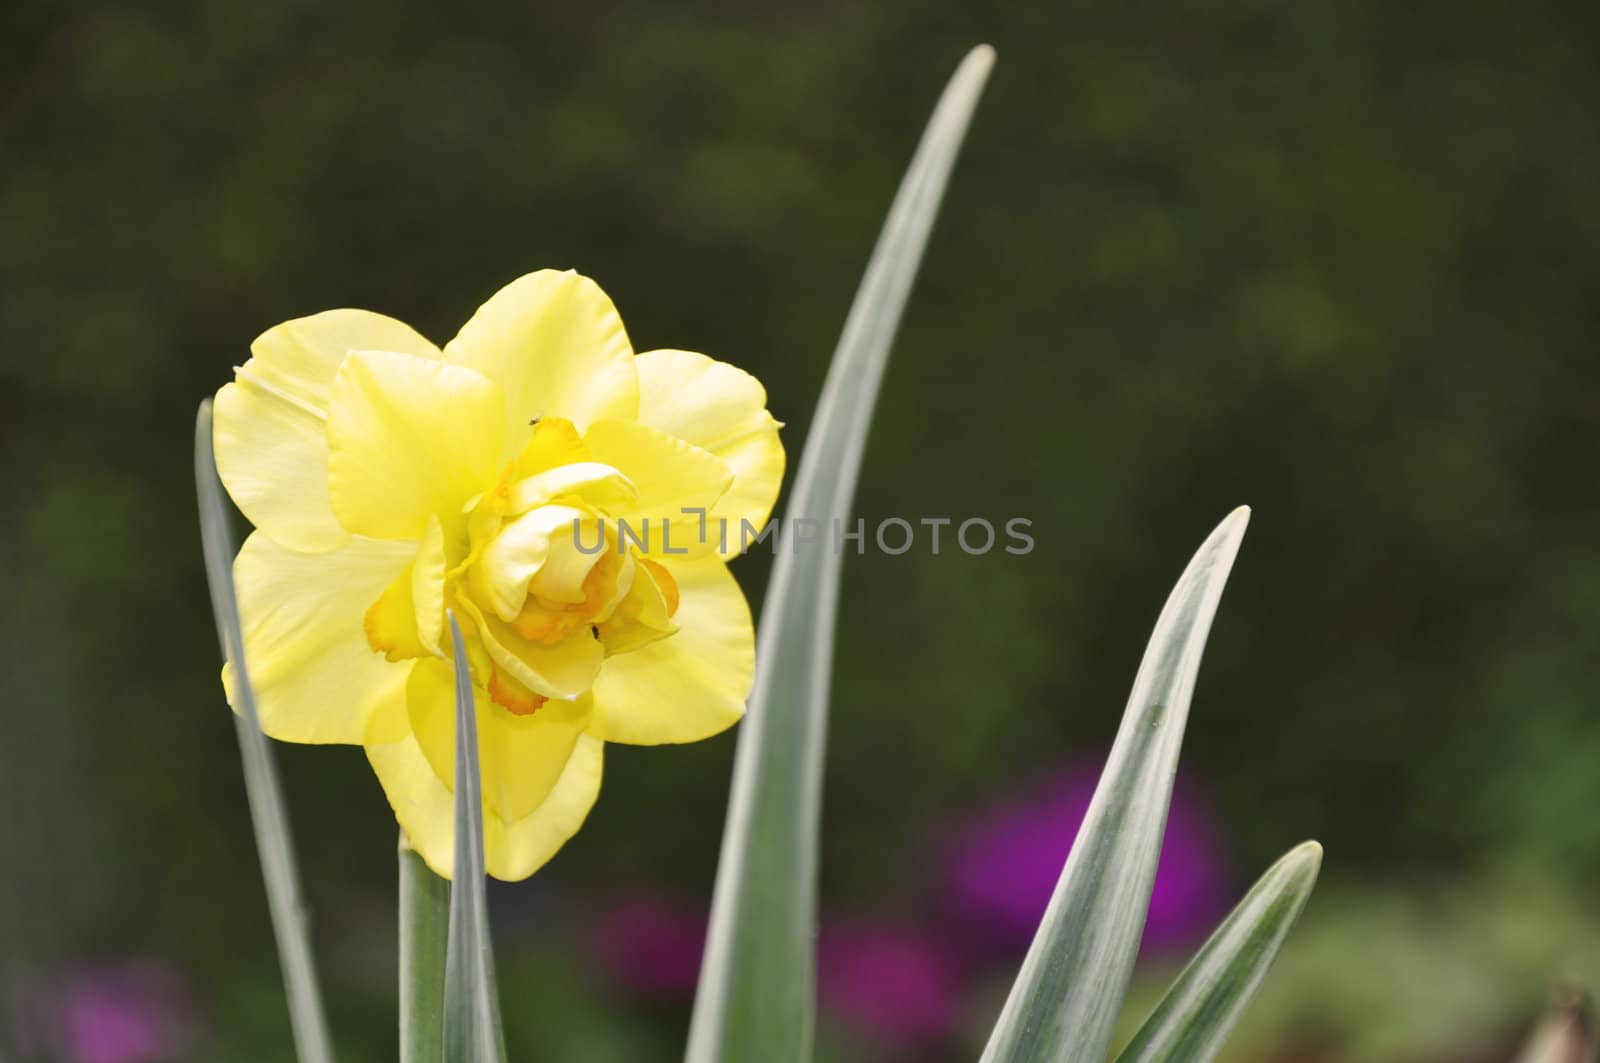 A Beautiful Daffodil in Spring